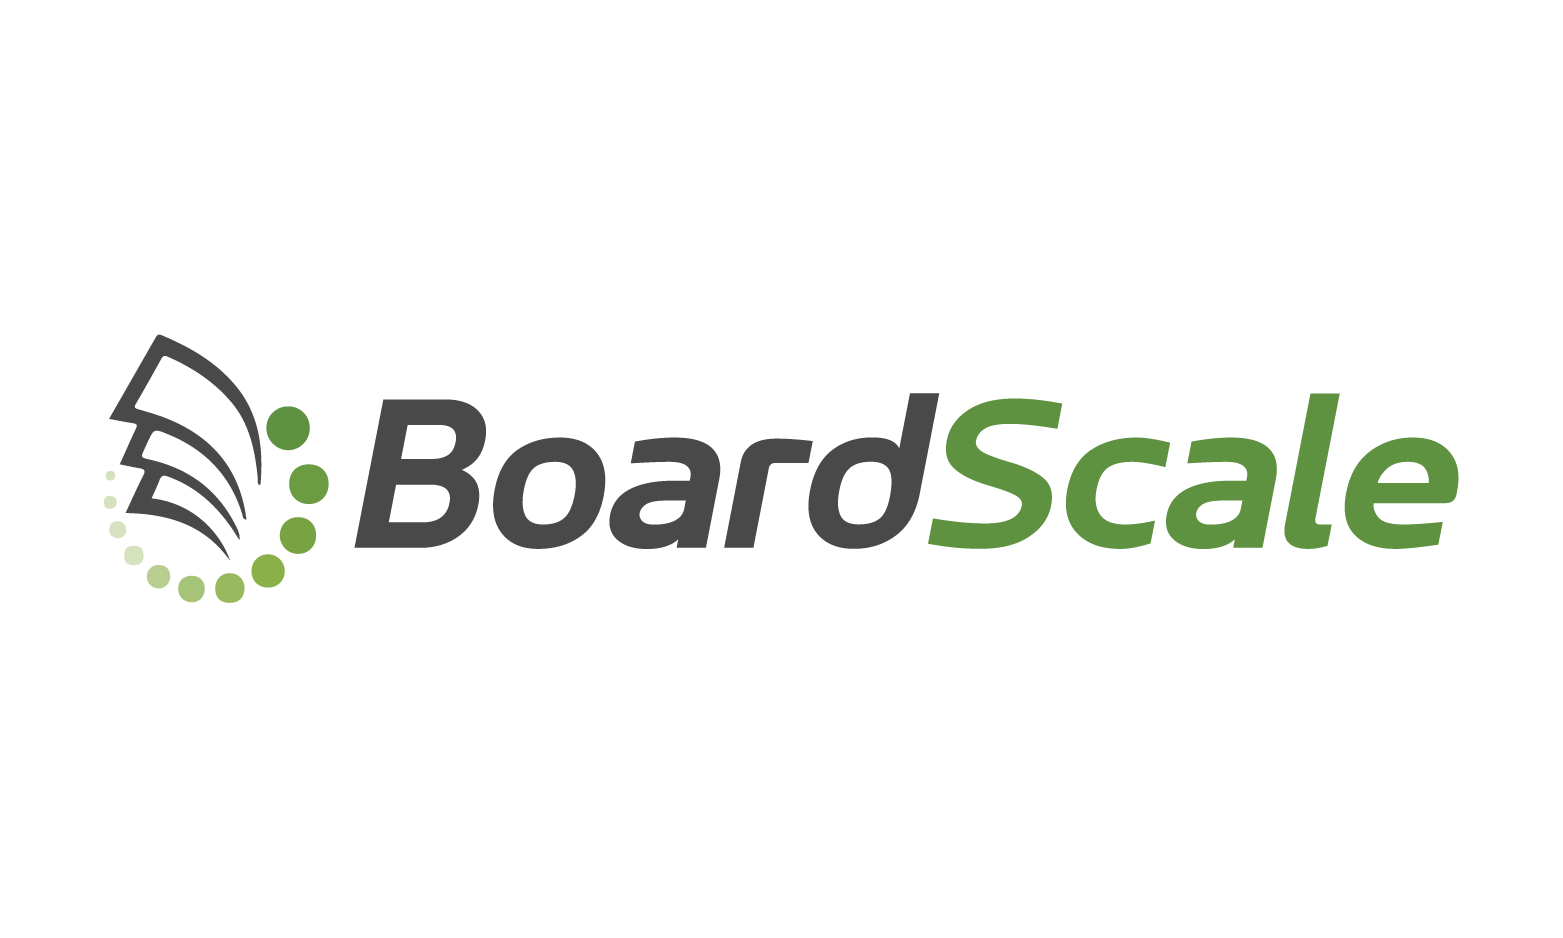 BoardScale.com - Creative brandable domain for sale